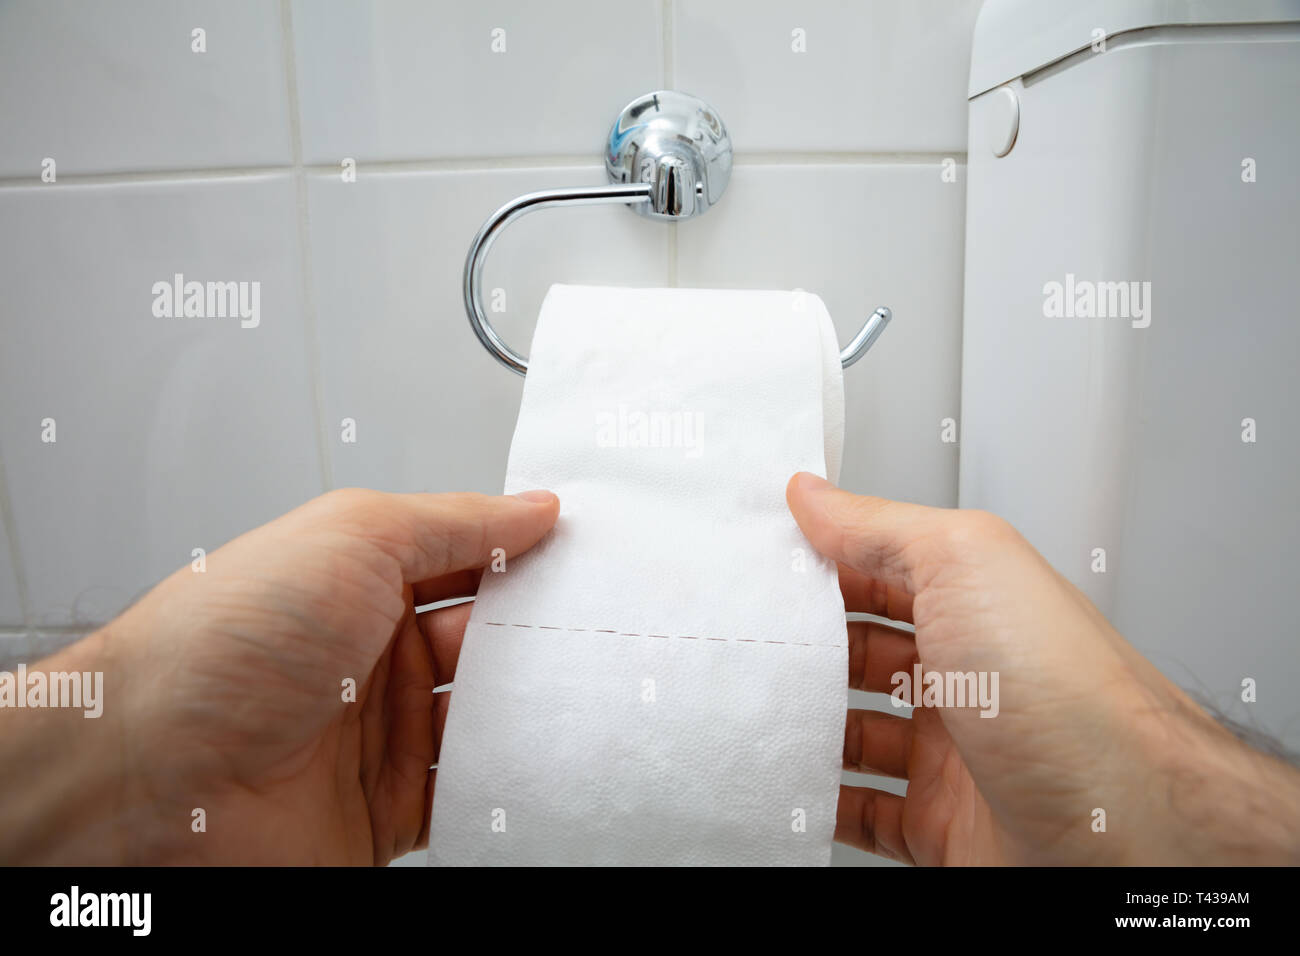 Close-up de la main humaine en utilisant du papier toilette dans la salle de bains Banque D'Images